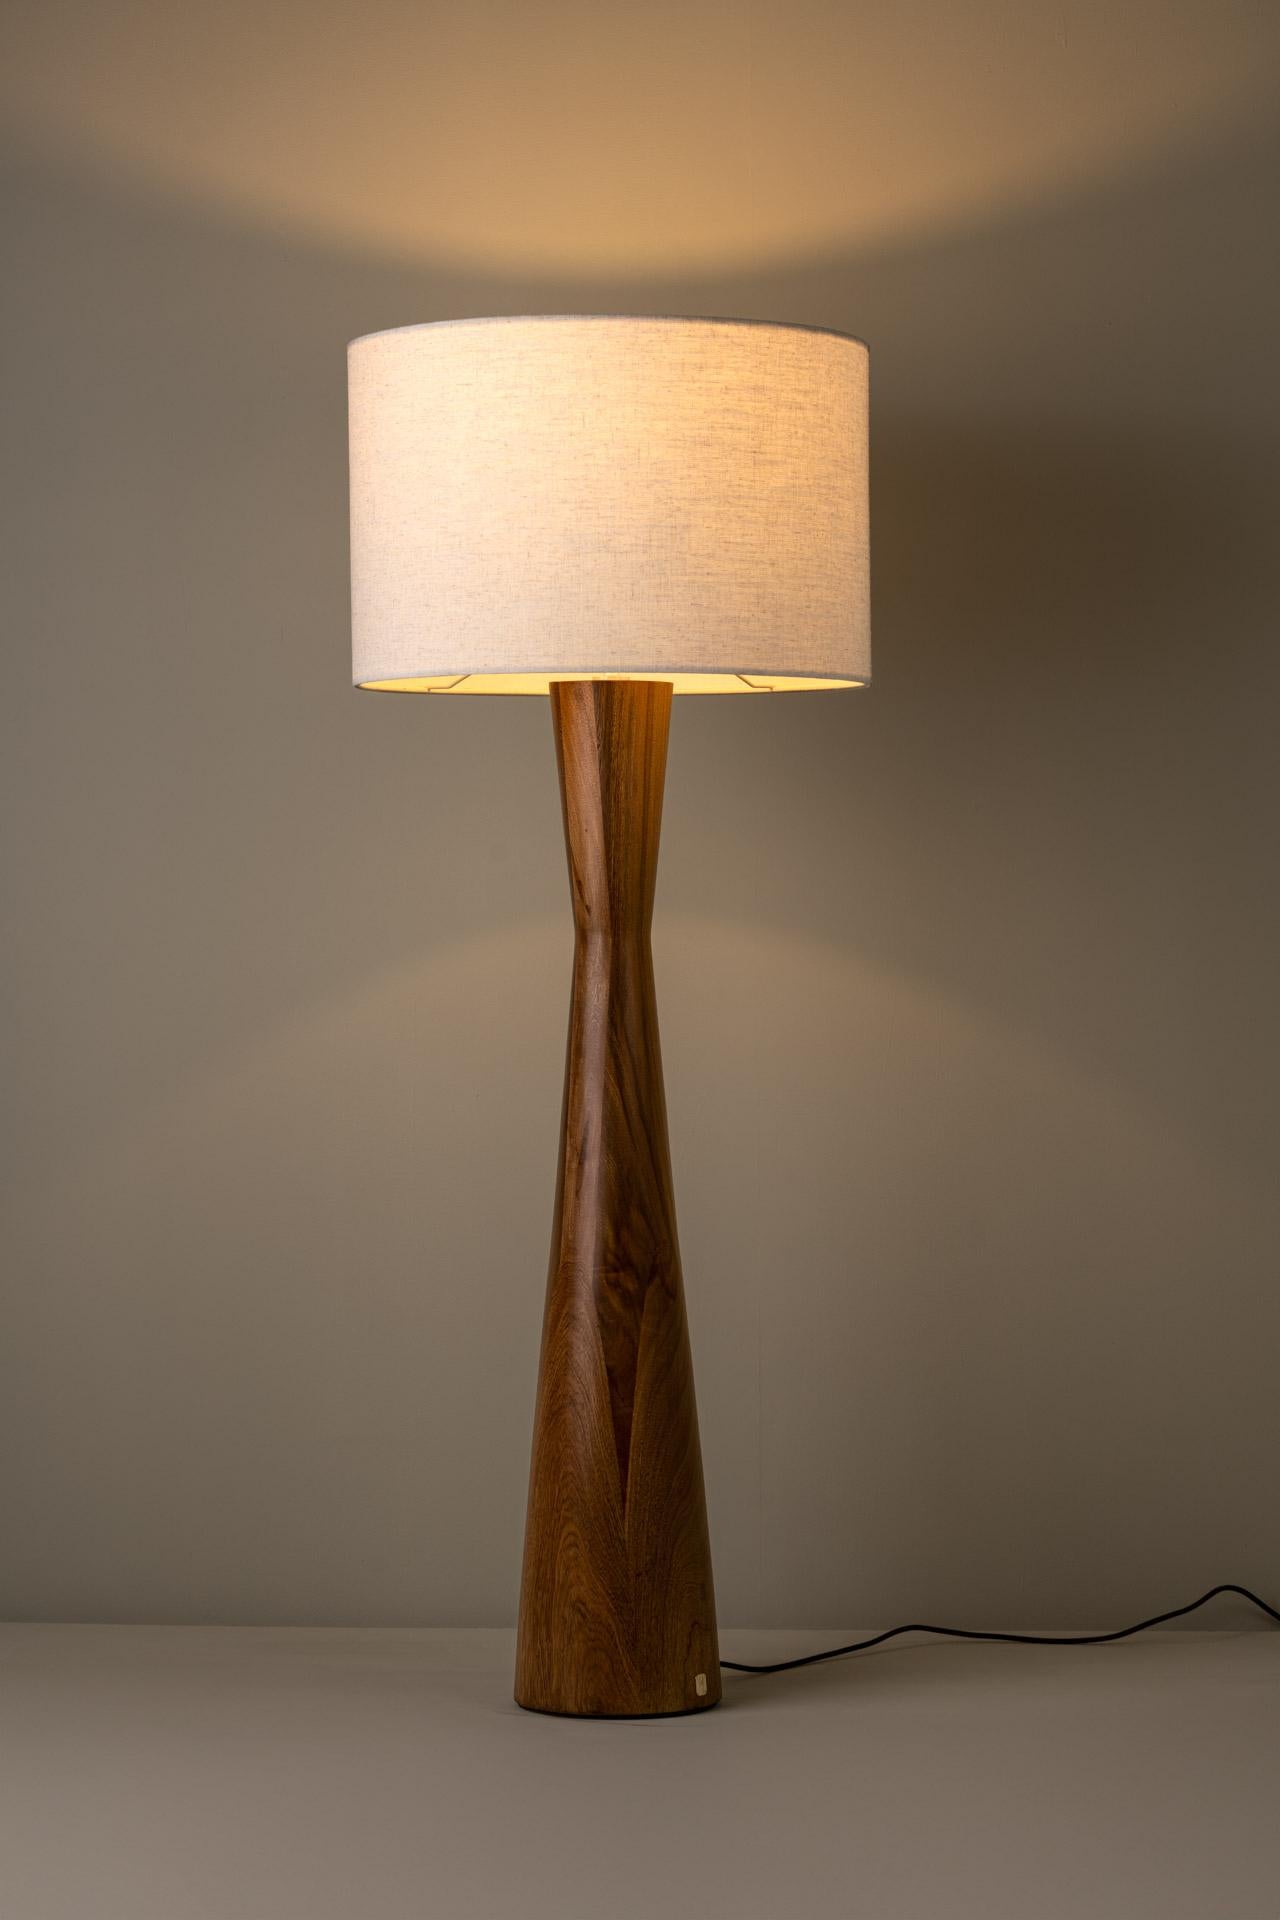 Le lampadaire TULIPÁN a été conçu pour la collection De Palo de l'artiste mexicaine Isabel Moncada.

Fabriqué en Rosa Morada, les deux cônes inversés qui se chevauchent donnent à Tulipán une forme qui suggère une proportion féminine tout à fait